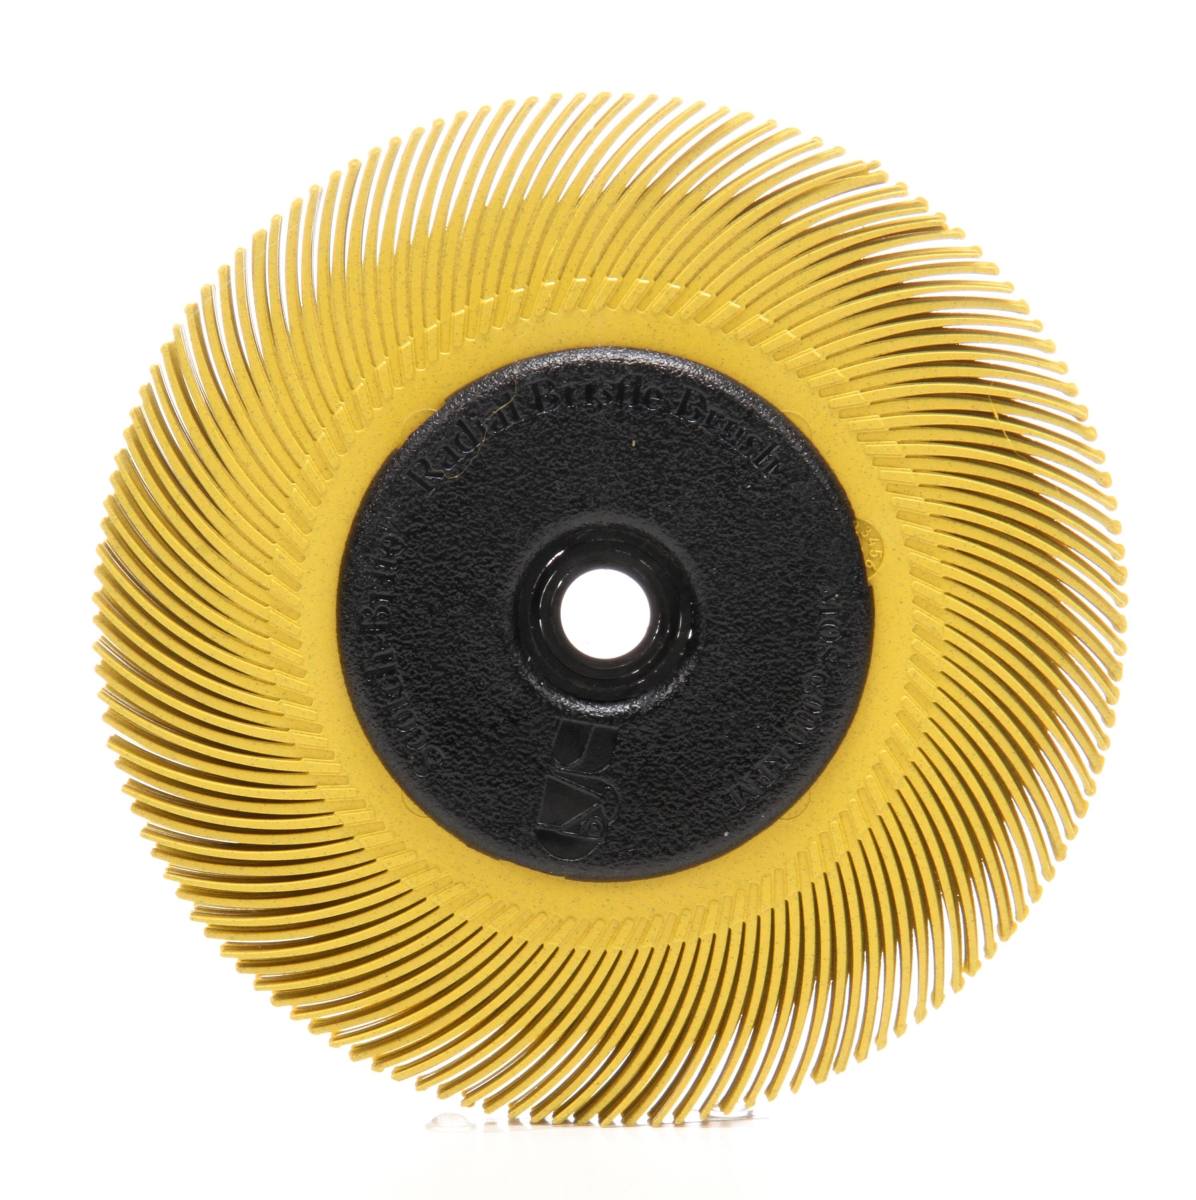 3M Scotch-Brite Radial Bristle Disc BB-ZB mit Flansch, gelb, 152,4 mm, P80, Typ C #33215